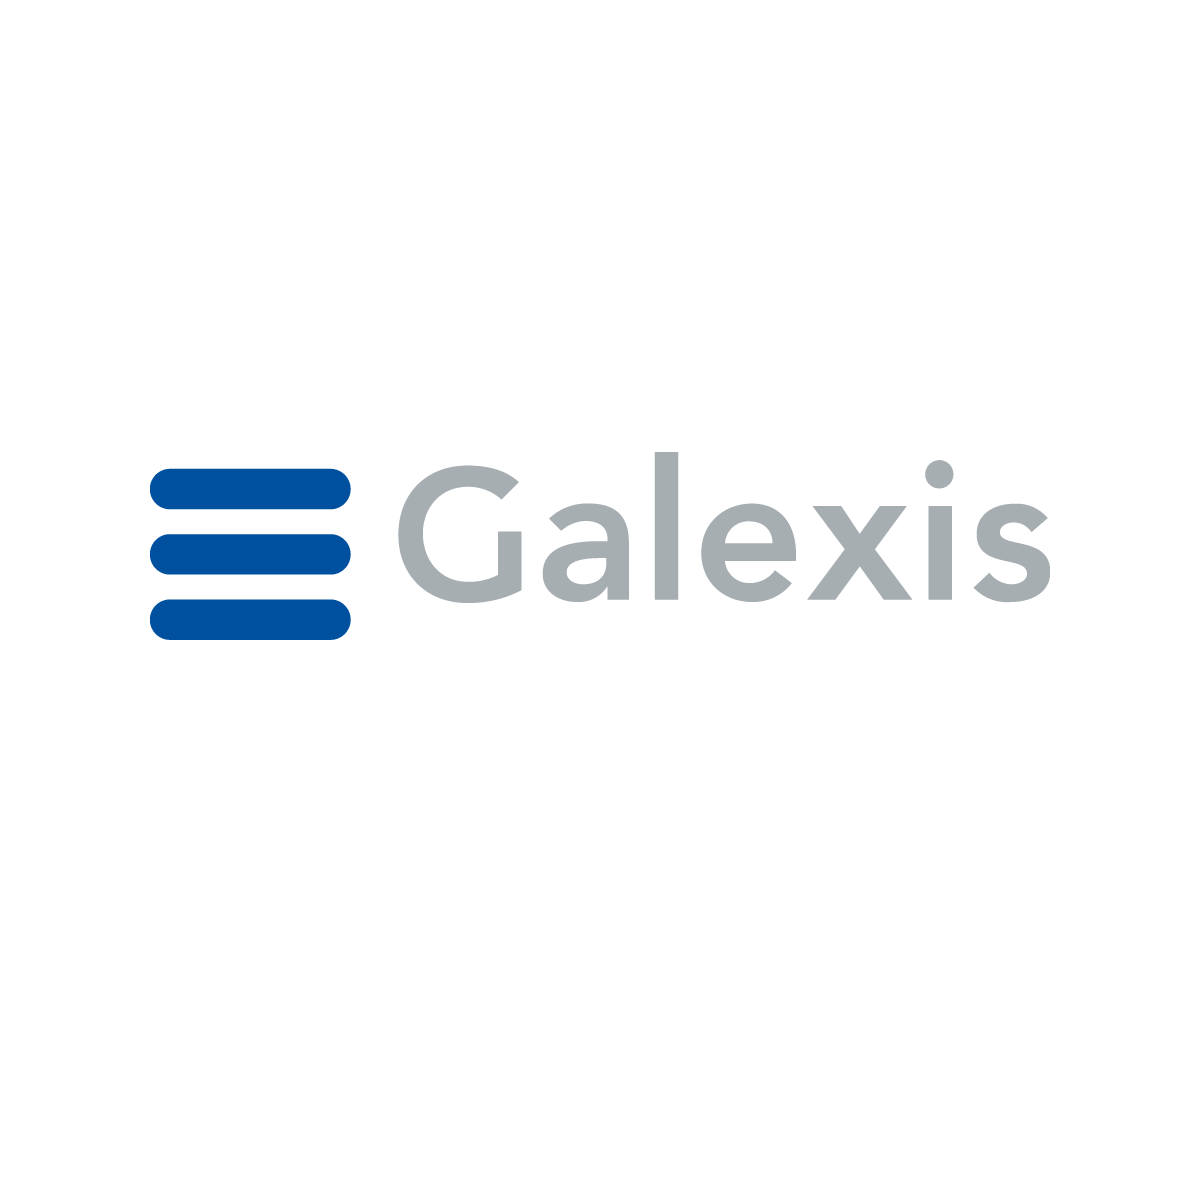 (c) E-galexis.com